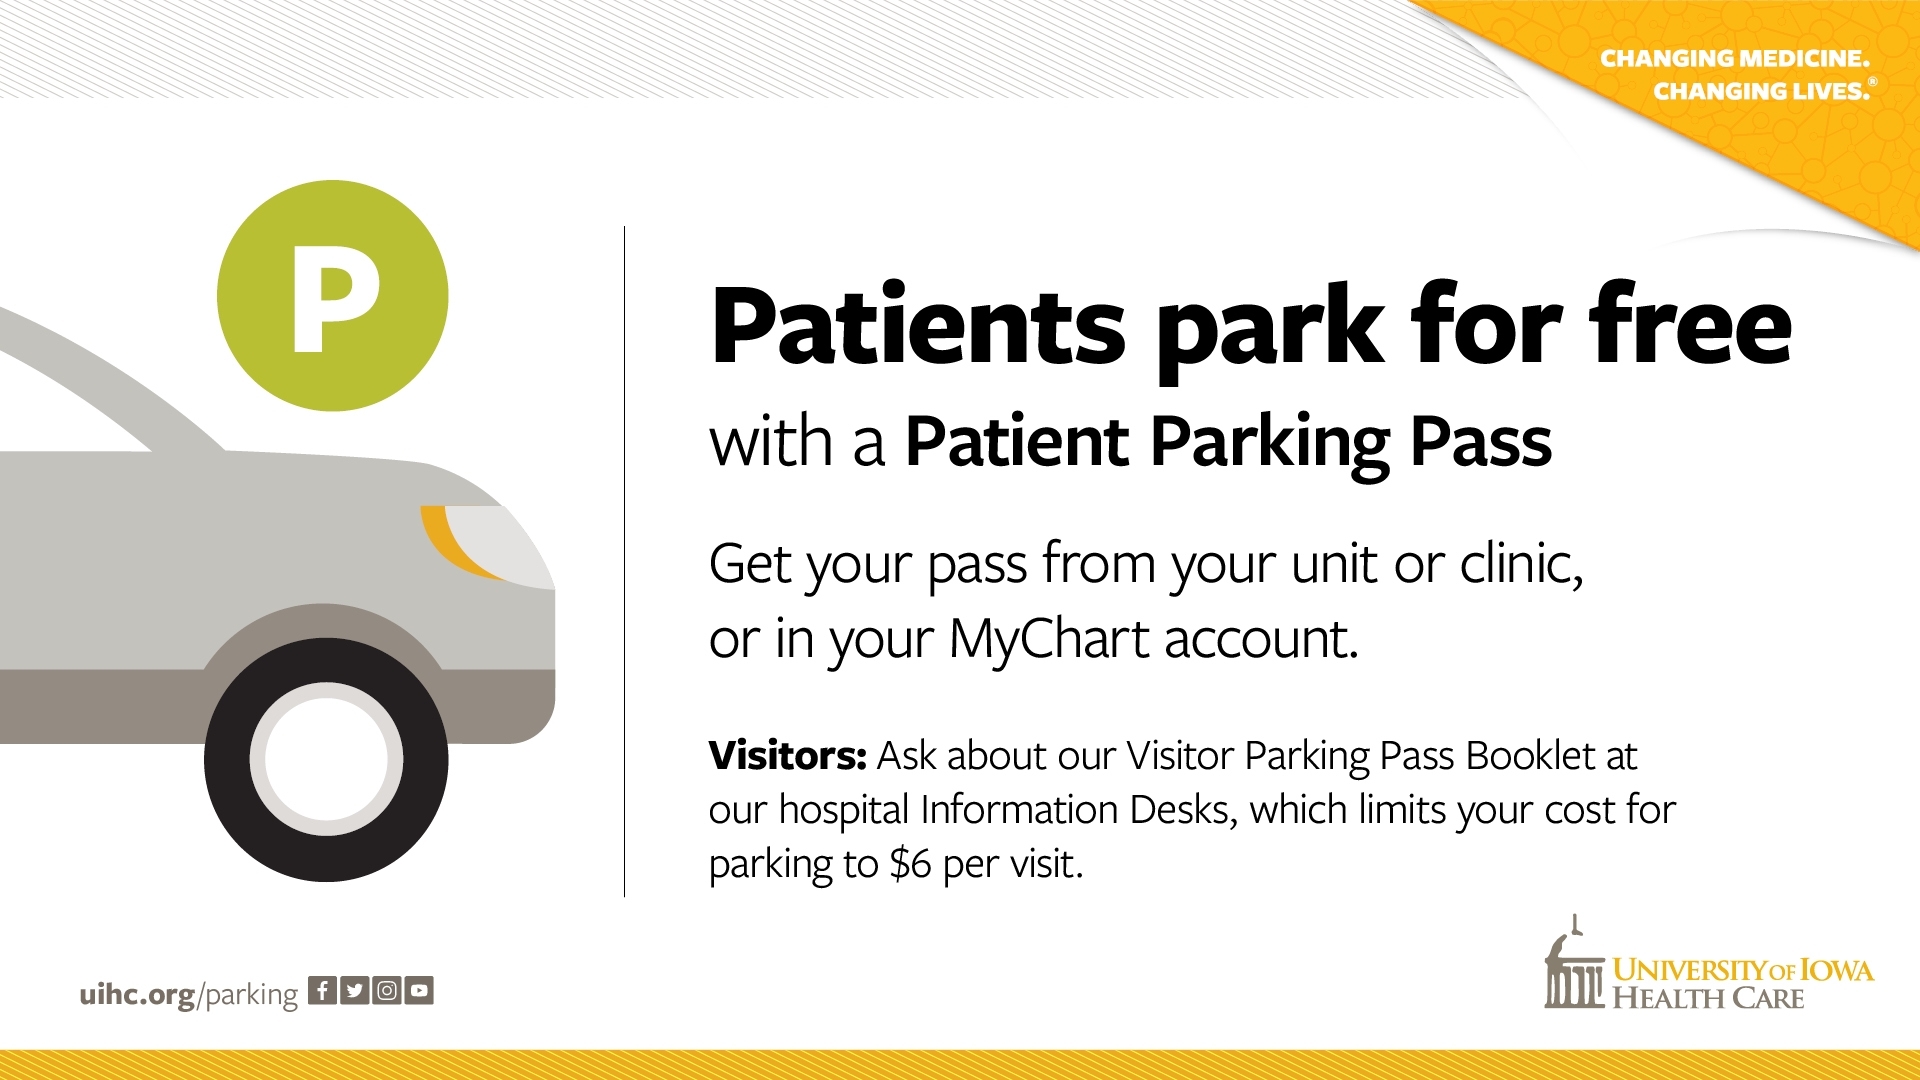 Patient parking